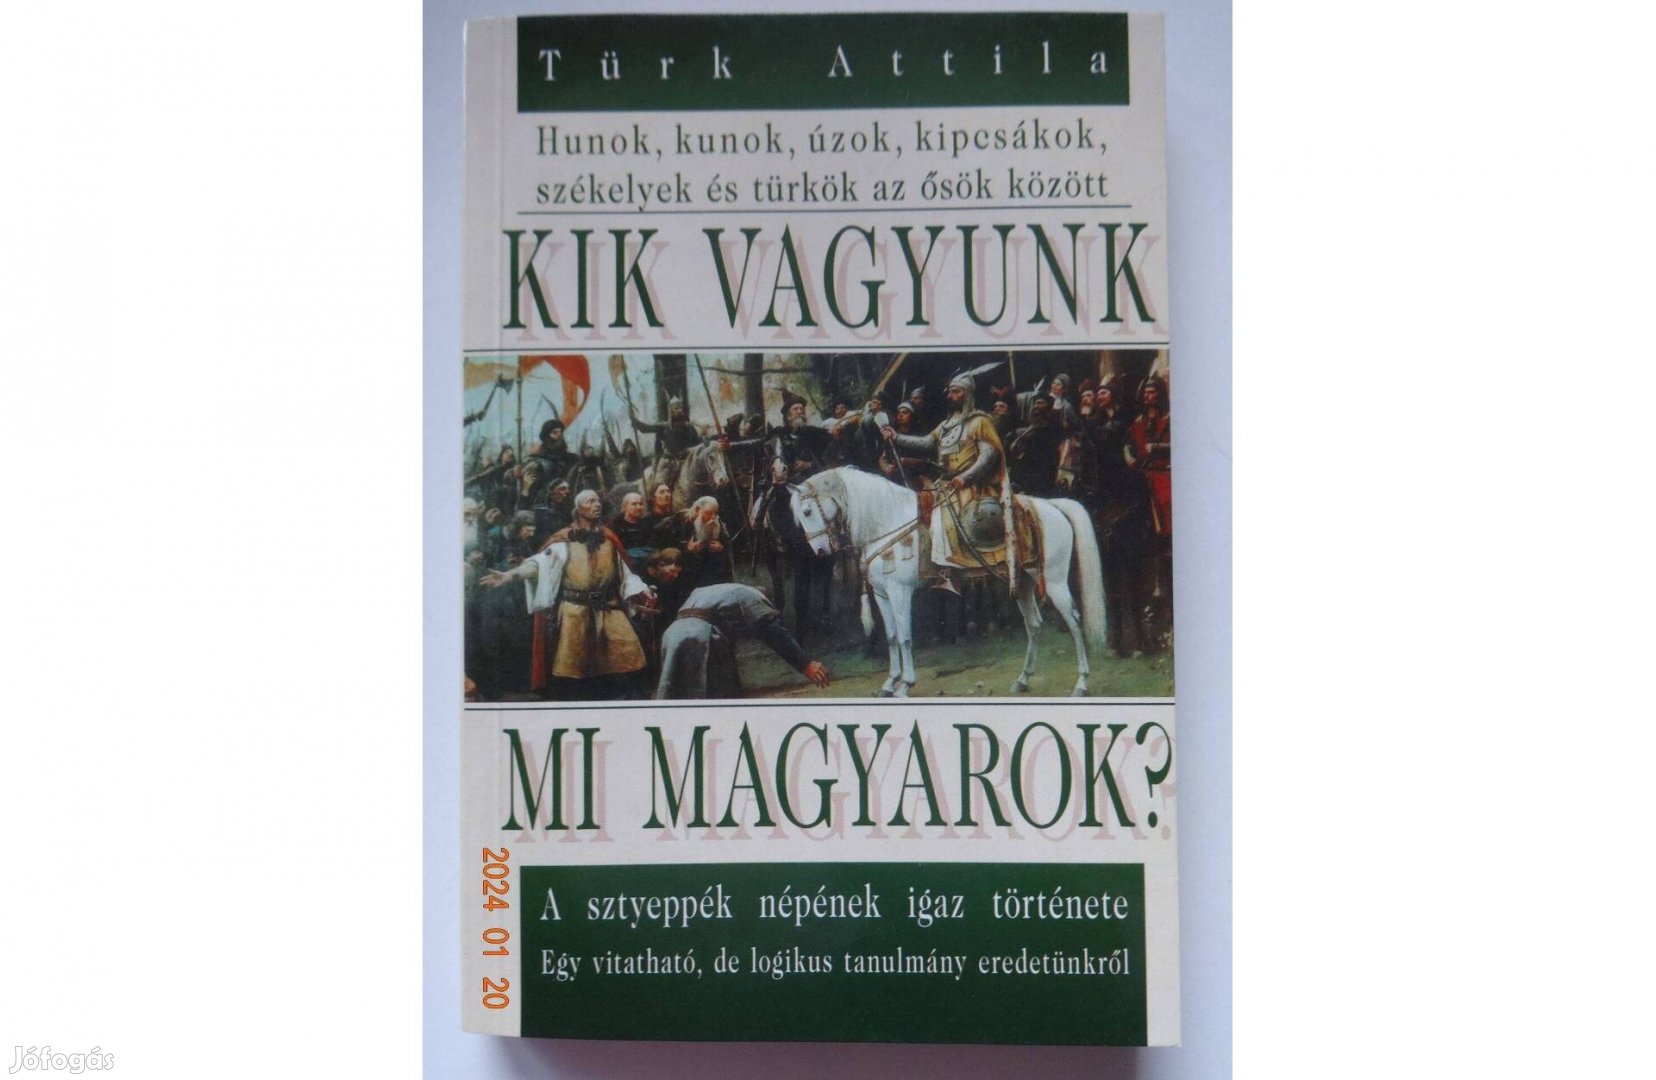 Türk Attila: Kik vagyunk mi magyarok? - a sztyeppék népének igaz tört